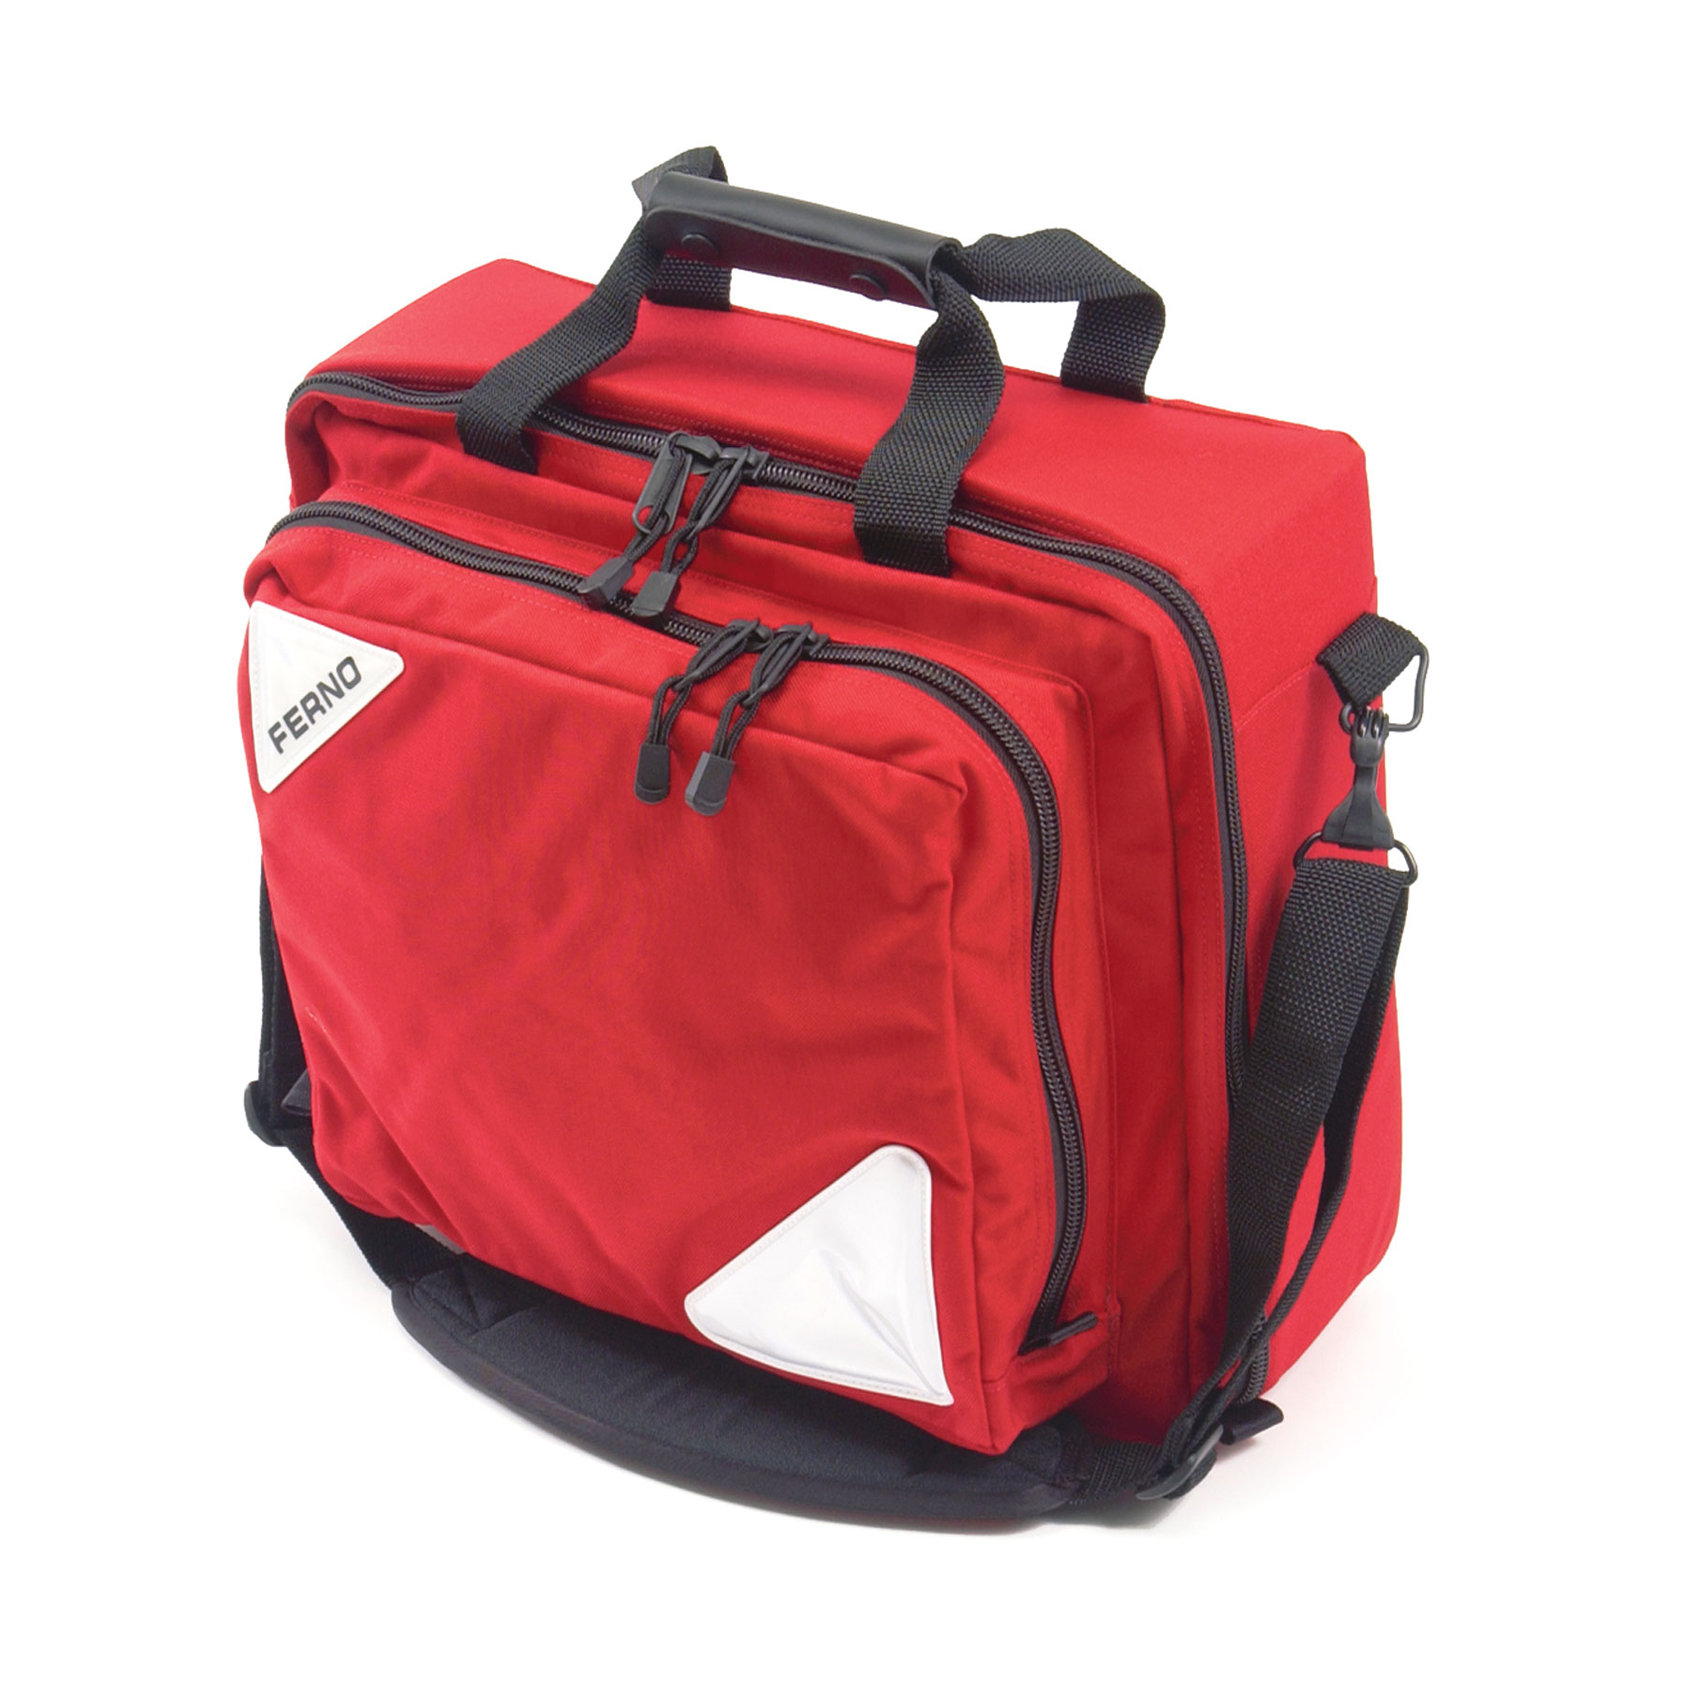 Trauma Responder II Bag (Ferno) - Bags - Empty, Ferno Safety Products